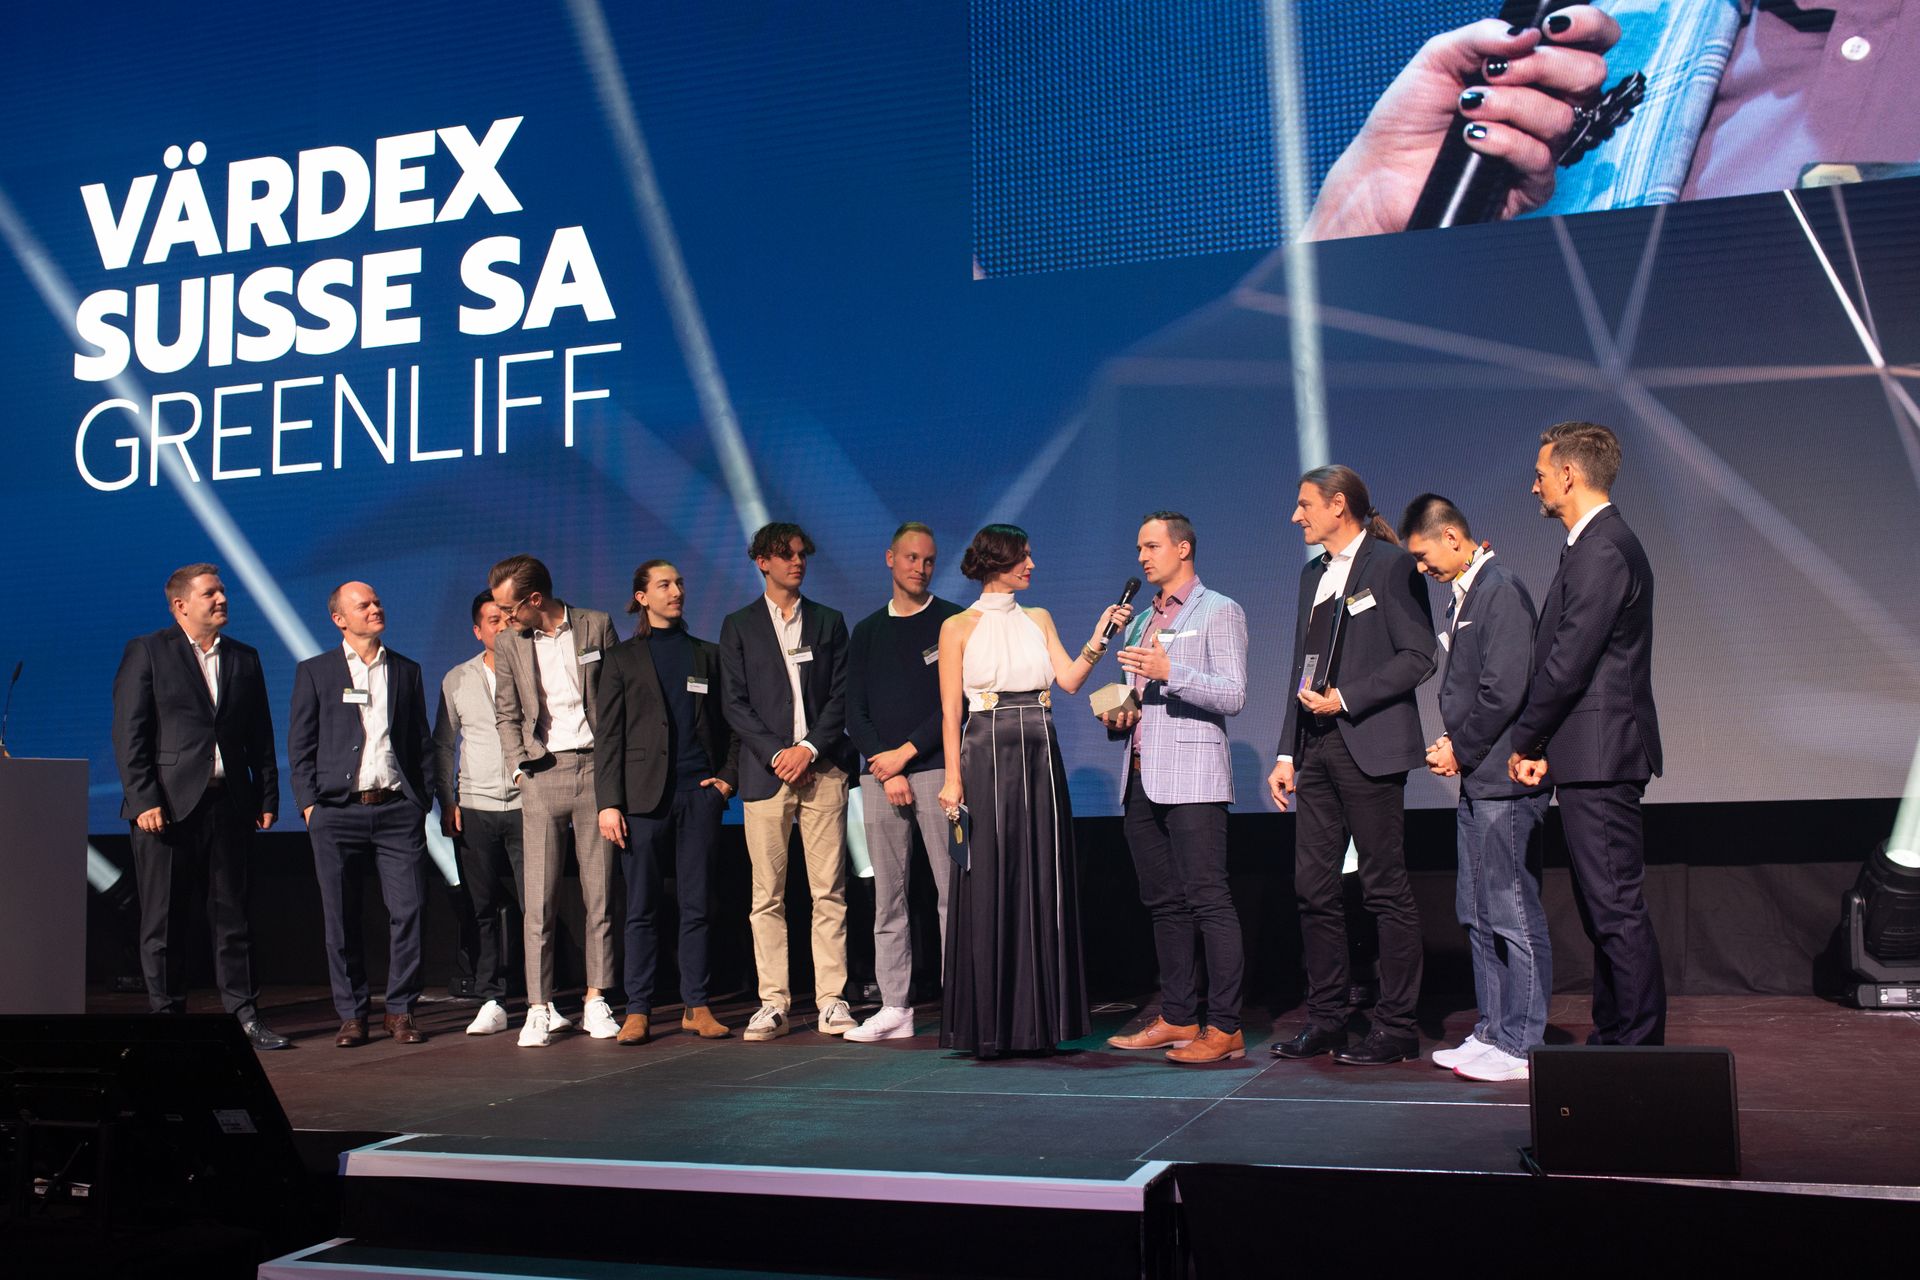 حصلت شركتا "Värdex Suisse" و "Greenliff" على جائزتي "أعلى جودة" في "جوائز الاقتصاد الرقمي" في سويسرا